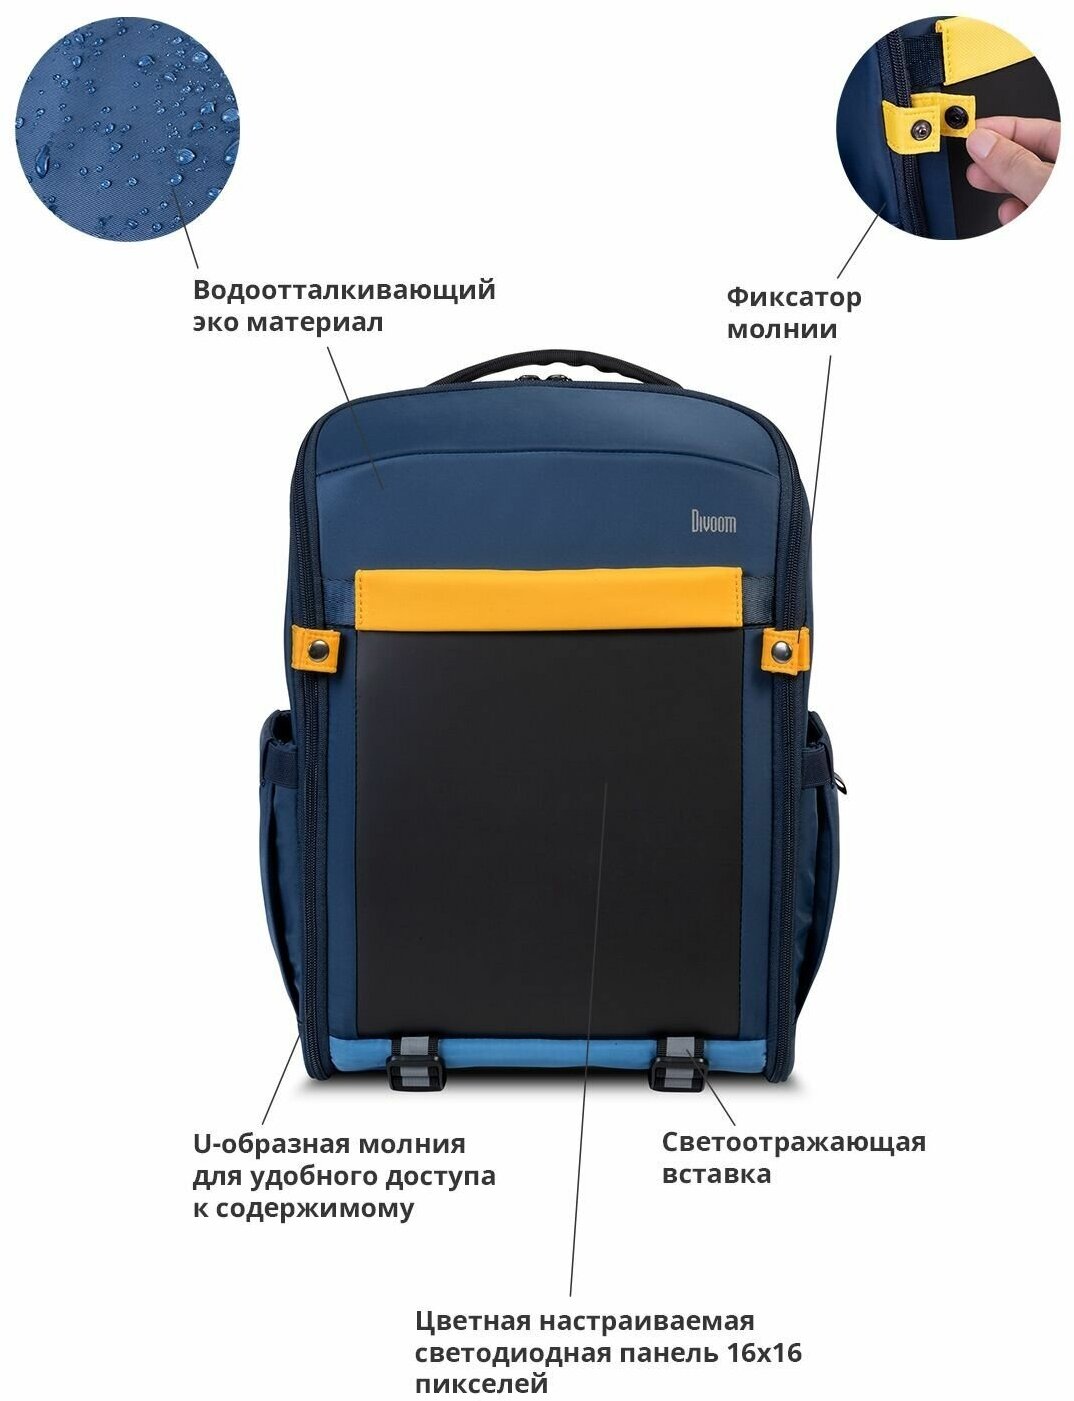 Рюкзак Divoom S с пиксельным LED-экраном